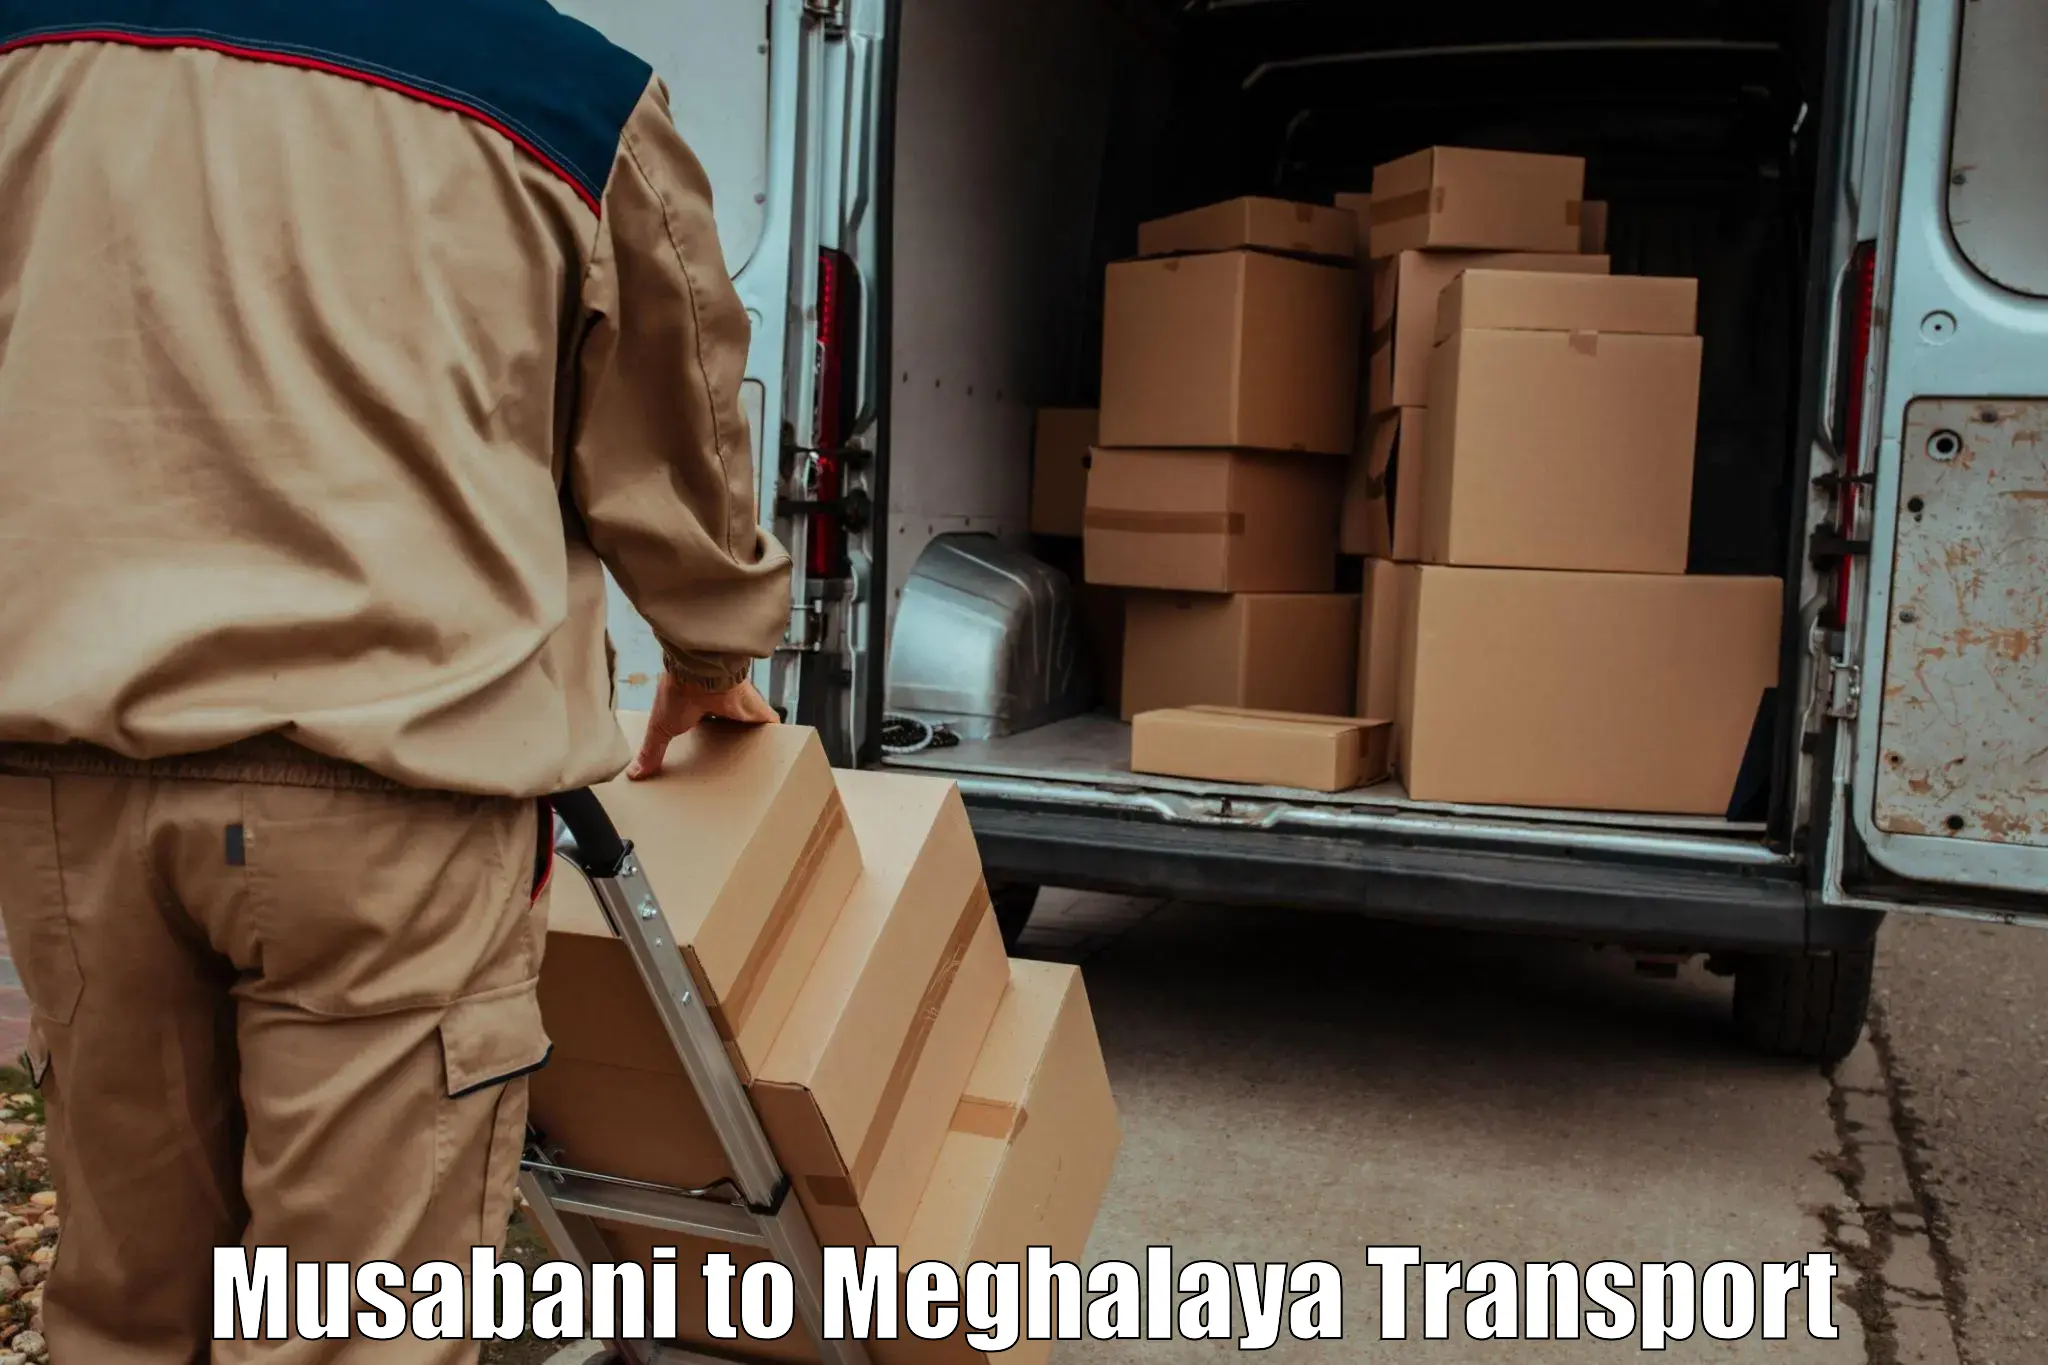 Pick up transport service Musabani to Meghalaya